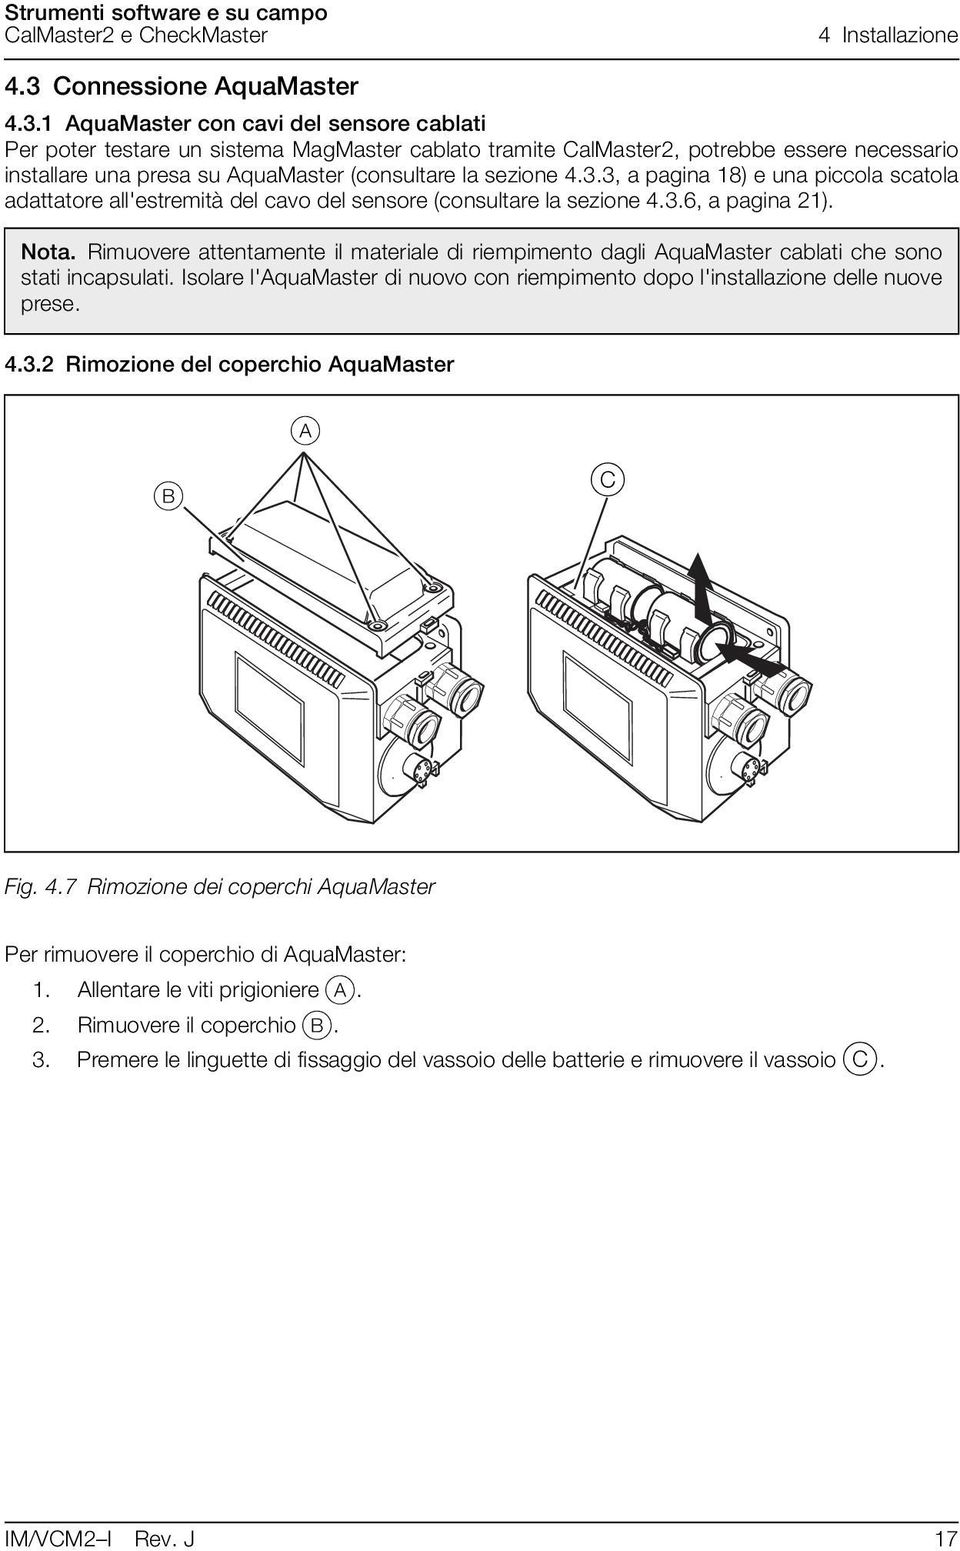 1 AquaMaster con cavi del sensore cablati Per poter testare un sistema MagMaster cablato tramite CalMaster2, potrebbe essere necessario installare una presa su AquaMaster (consultare la sezione 4.3.